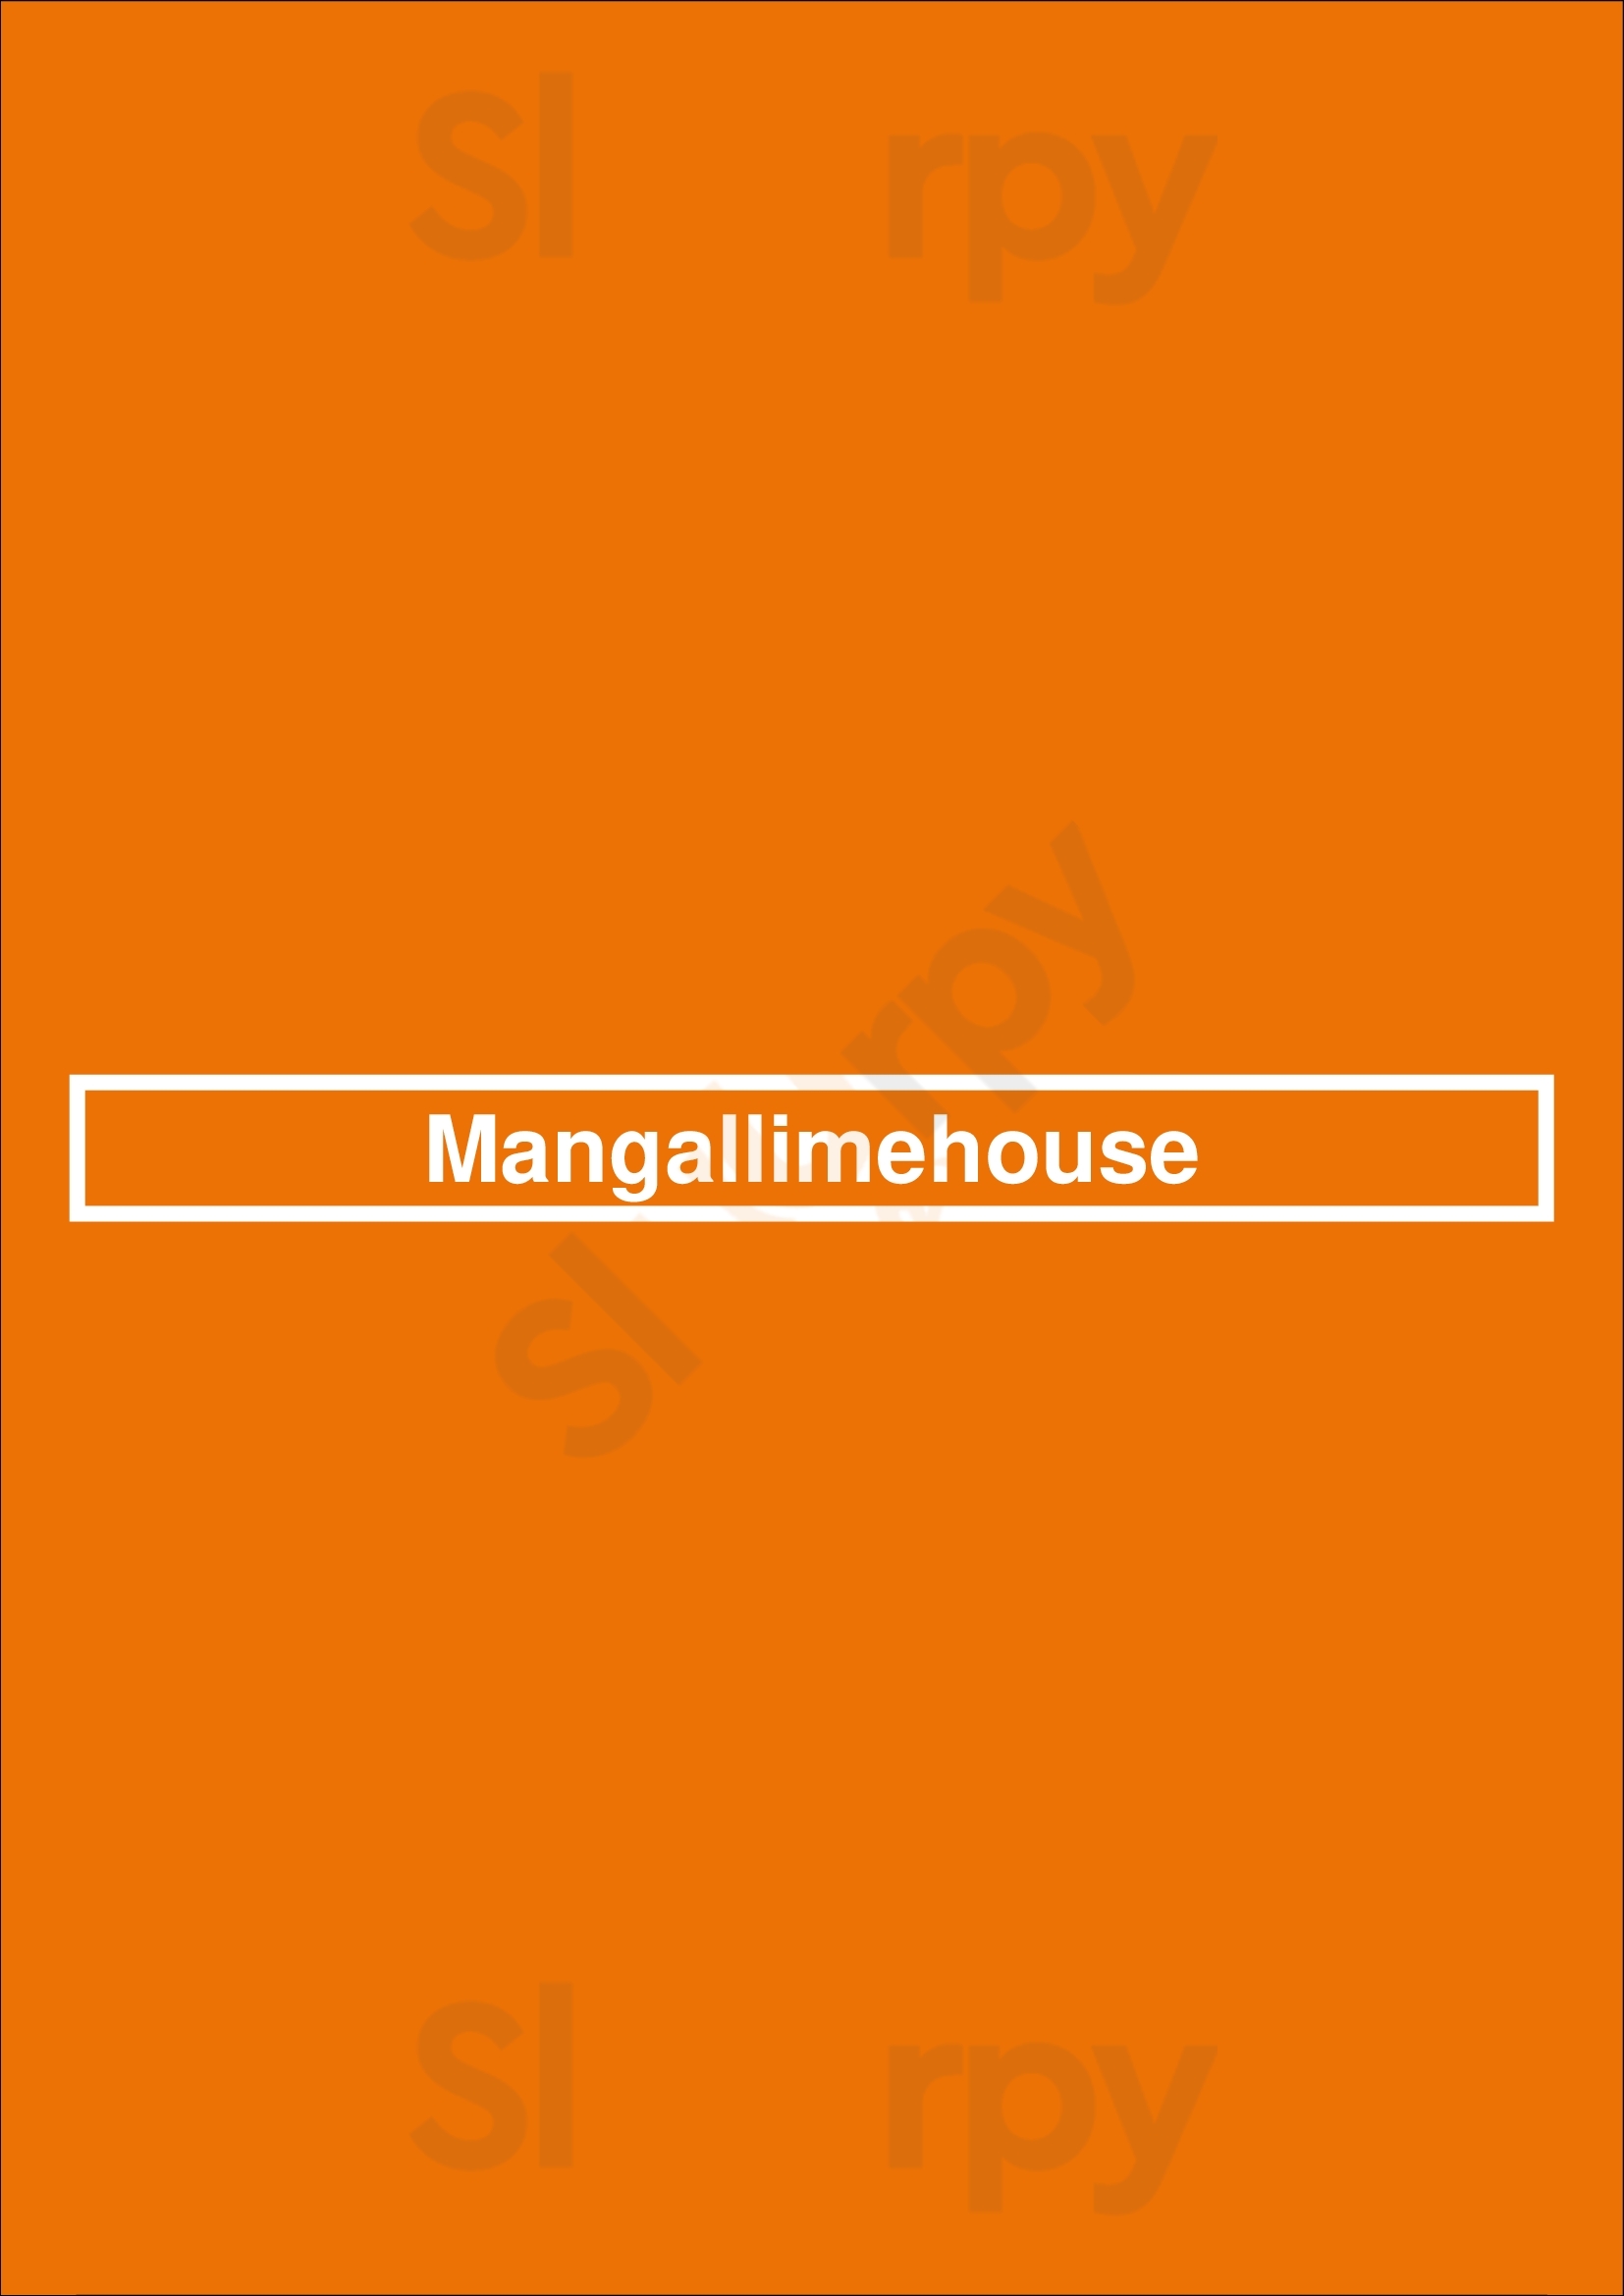 Mangallimehouse London Menu - 1